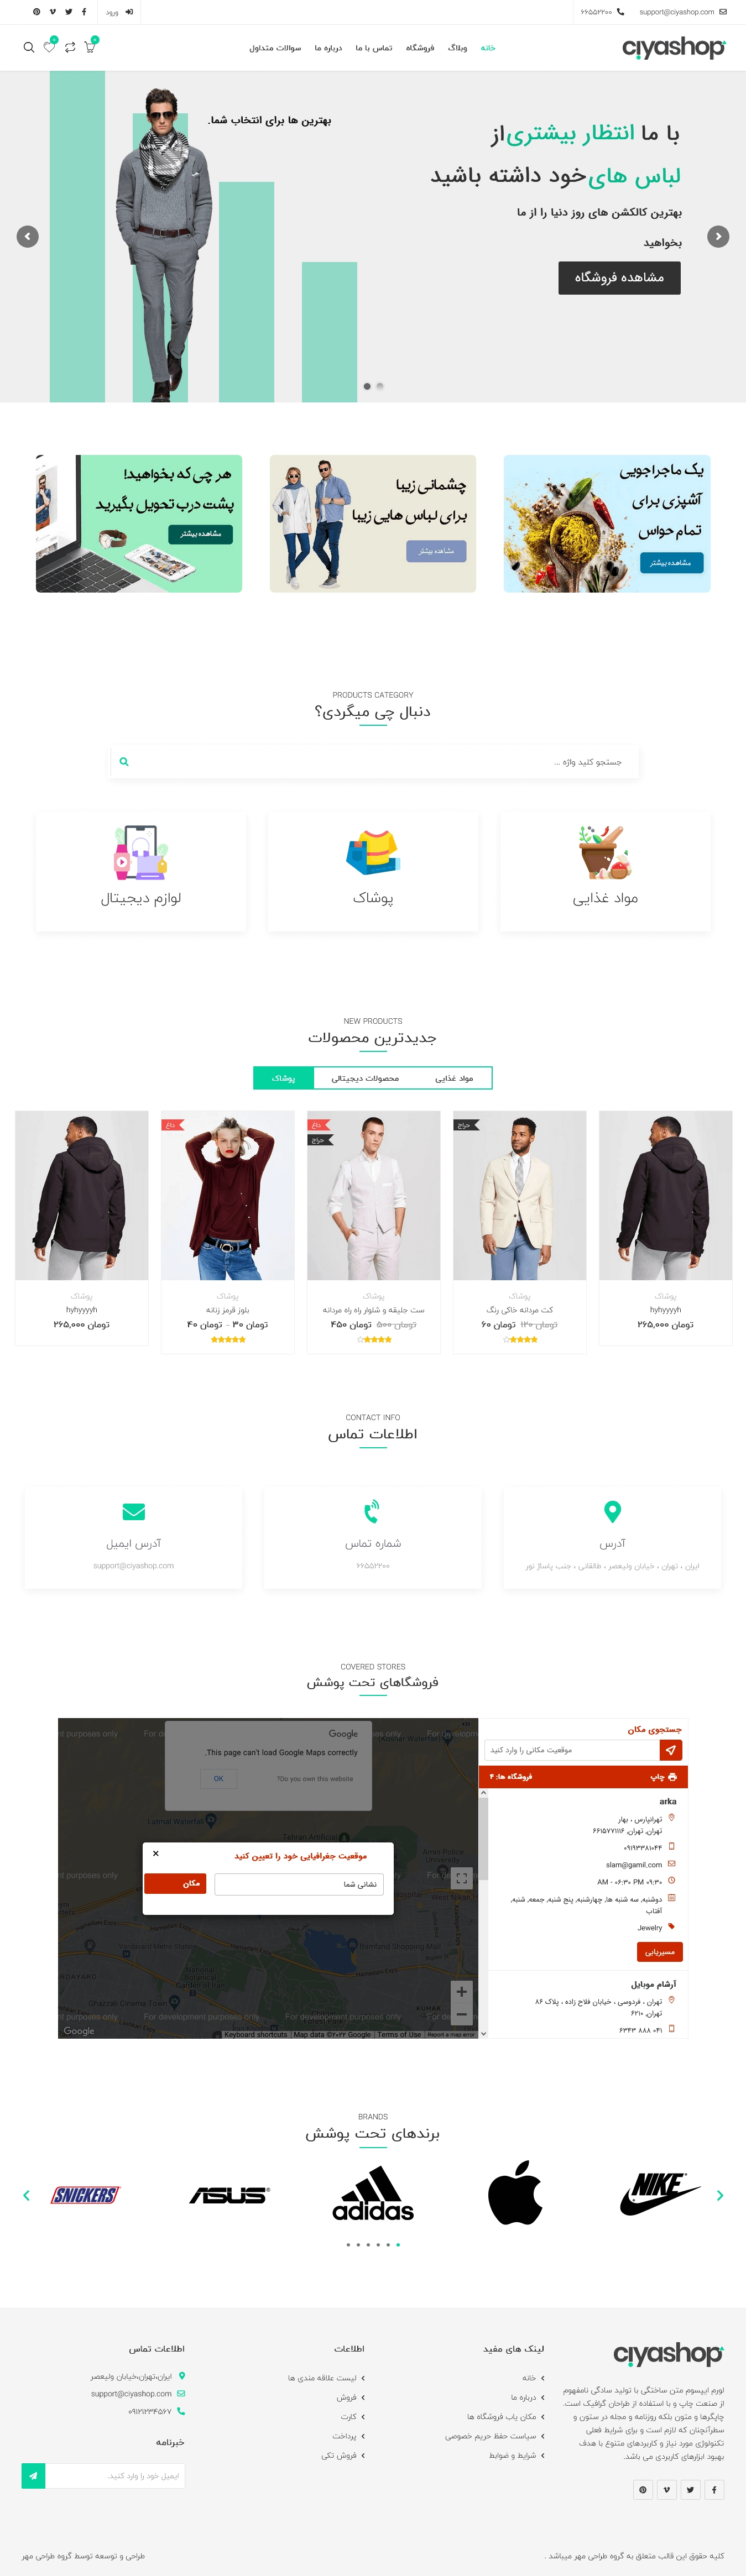 طراحی وب سایت فروشگاهی ciyashop